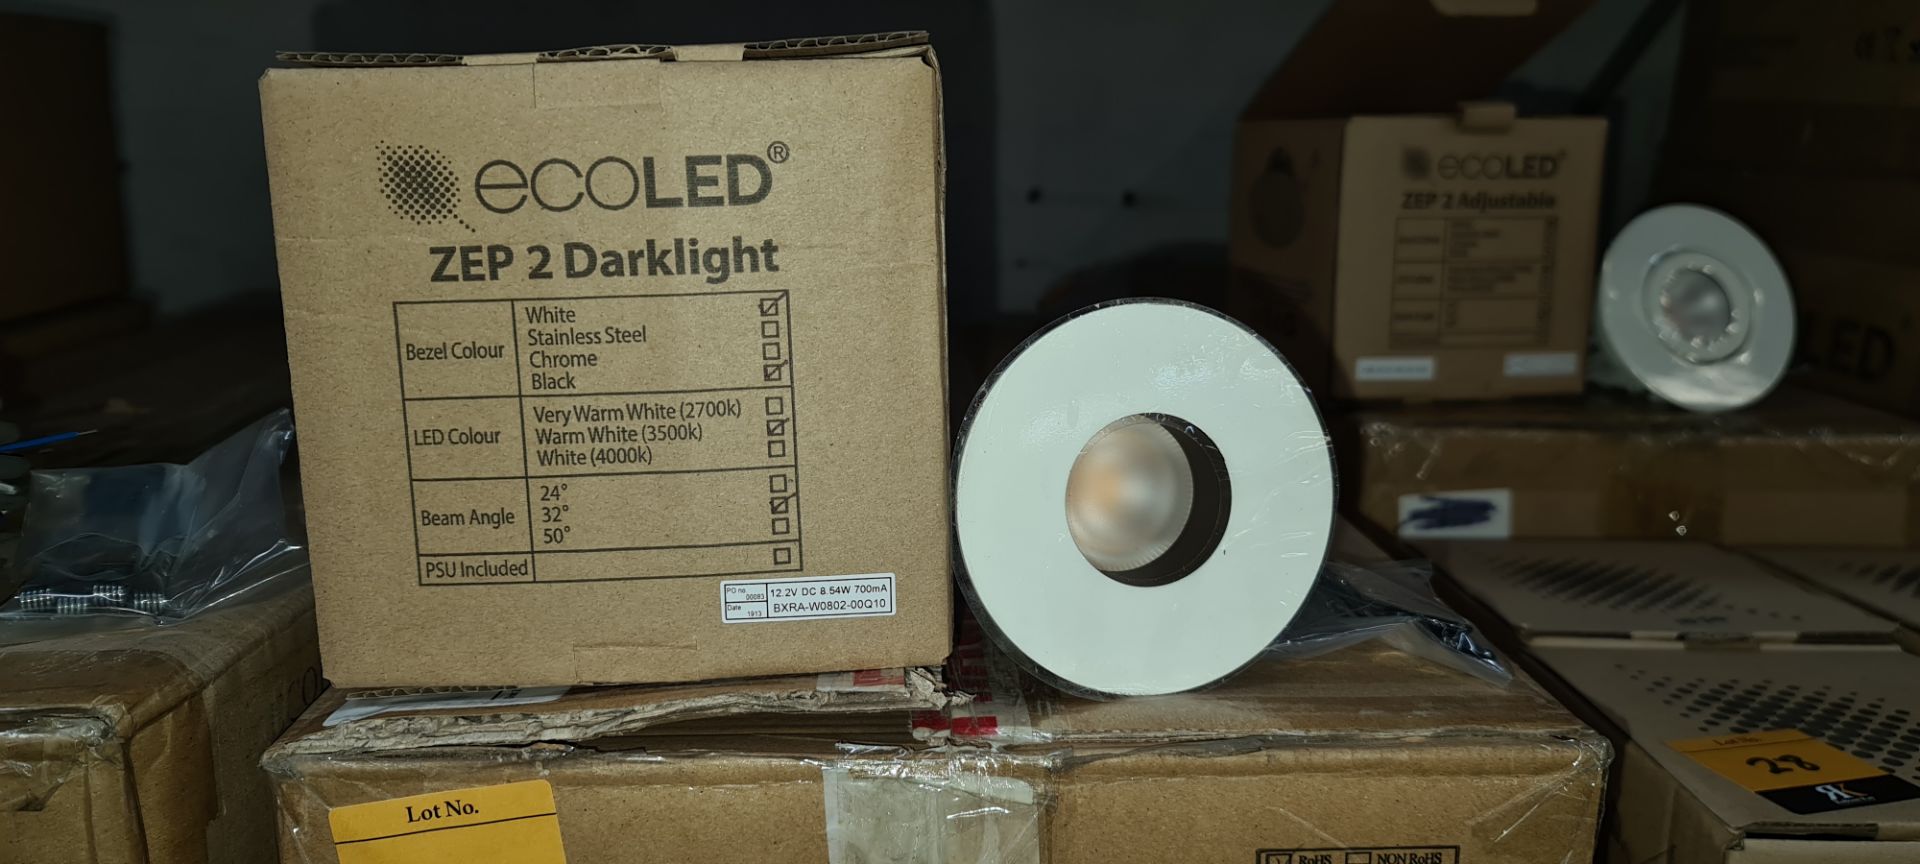 10 off EcoLED ZEP2 Darklight downlights, model Z2-D-W-13-30-80-45-1050 - Image 2 of 8